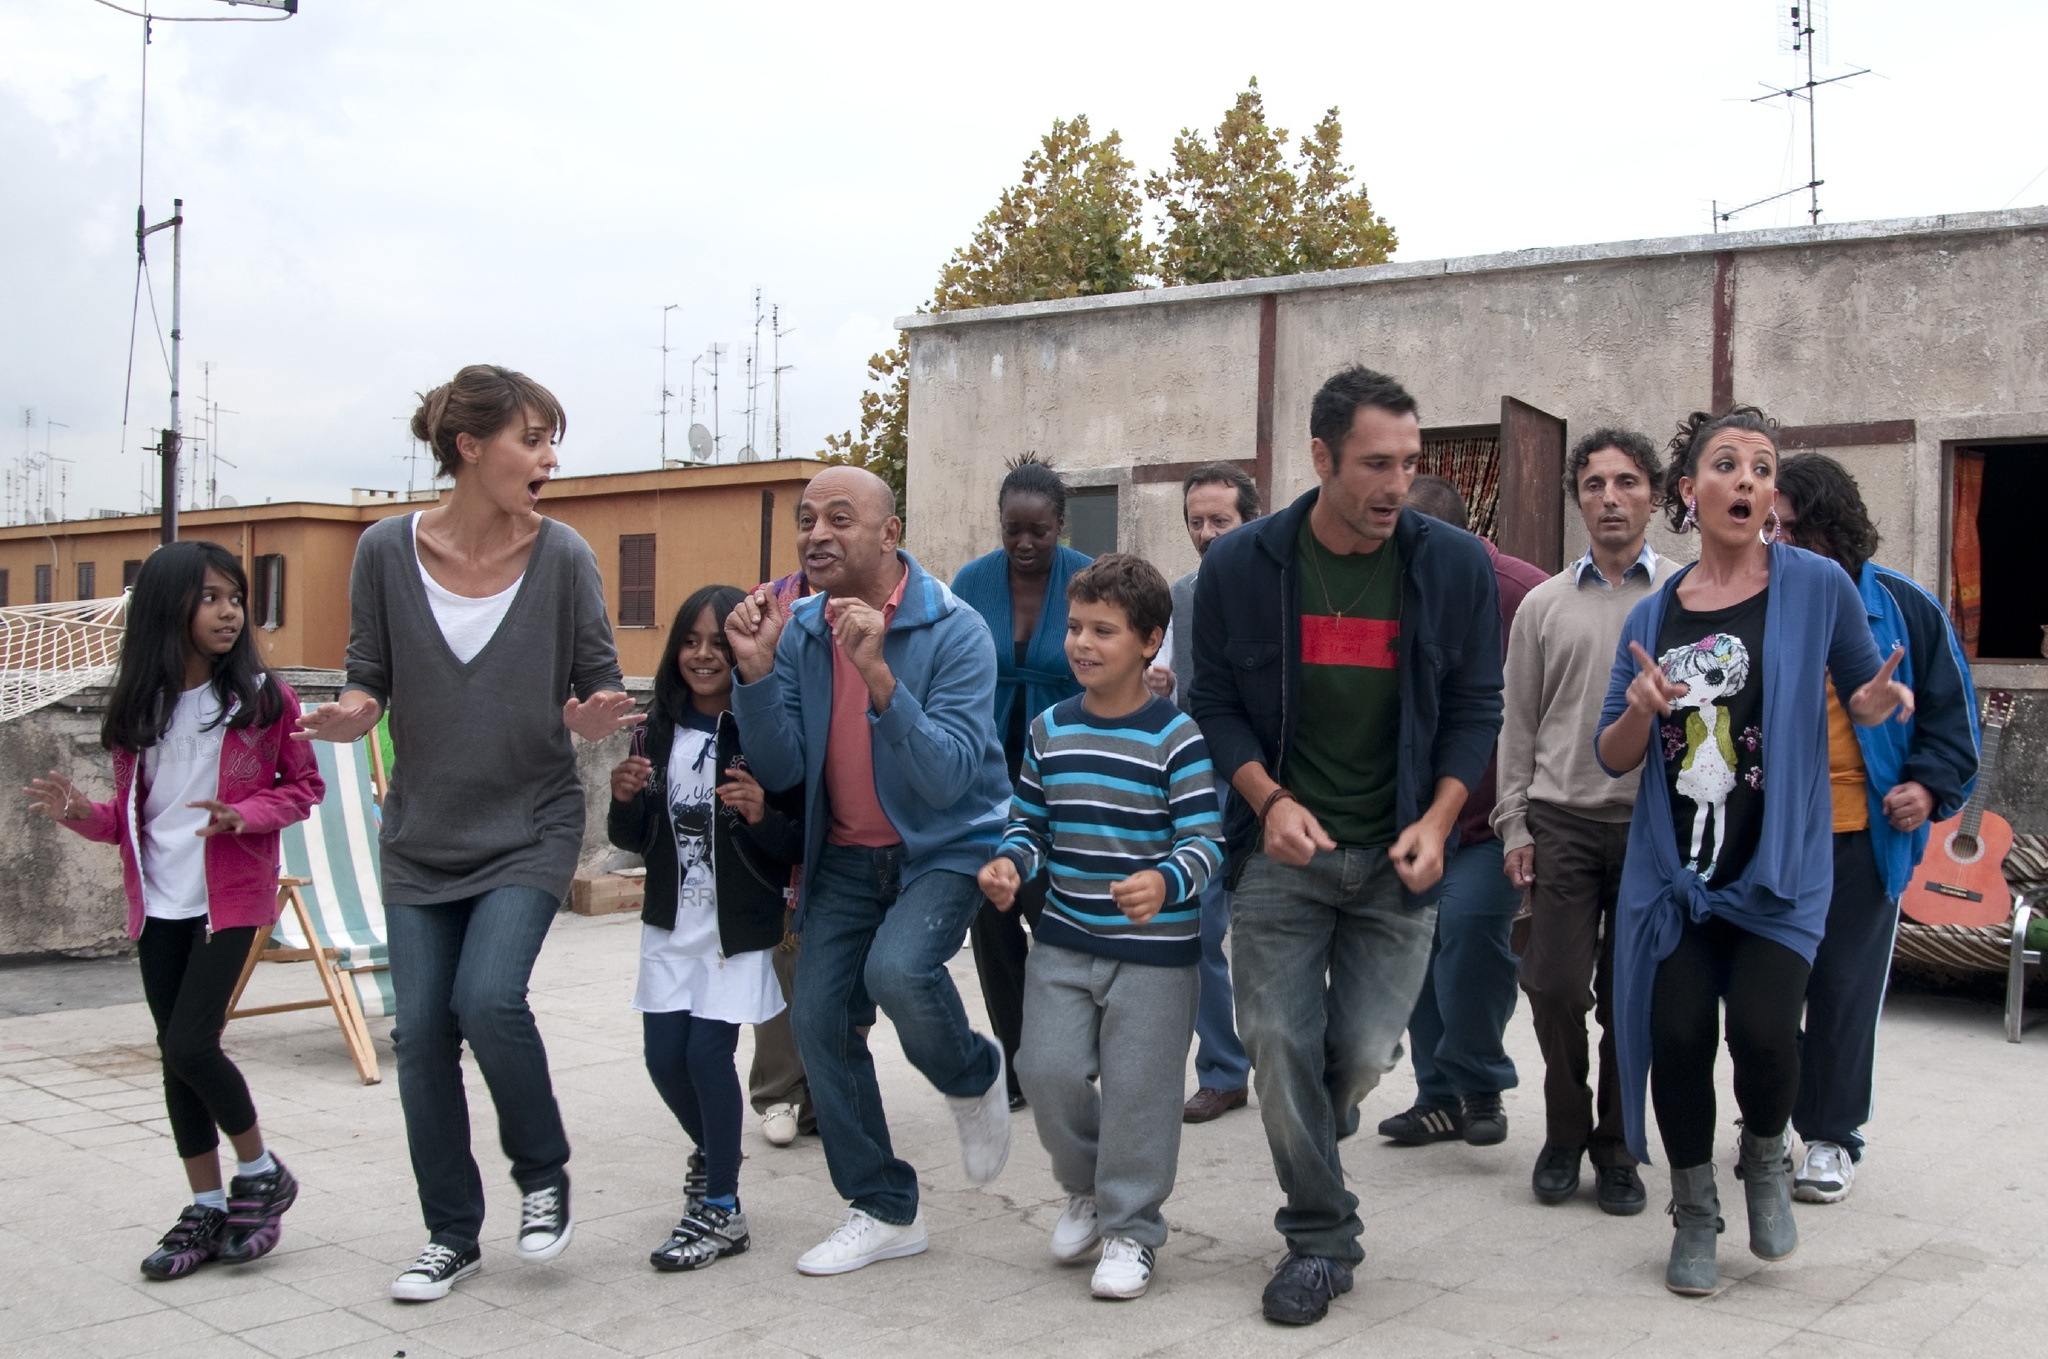 Still of Raoul Bova, Paola Cortellesi, Hassani Shapi, Lucia Ocone, Valerio Aprea and Giovanni Bruno in Nessuno mi può giudicare (2011)